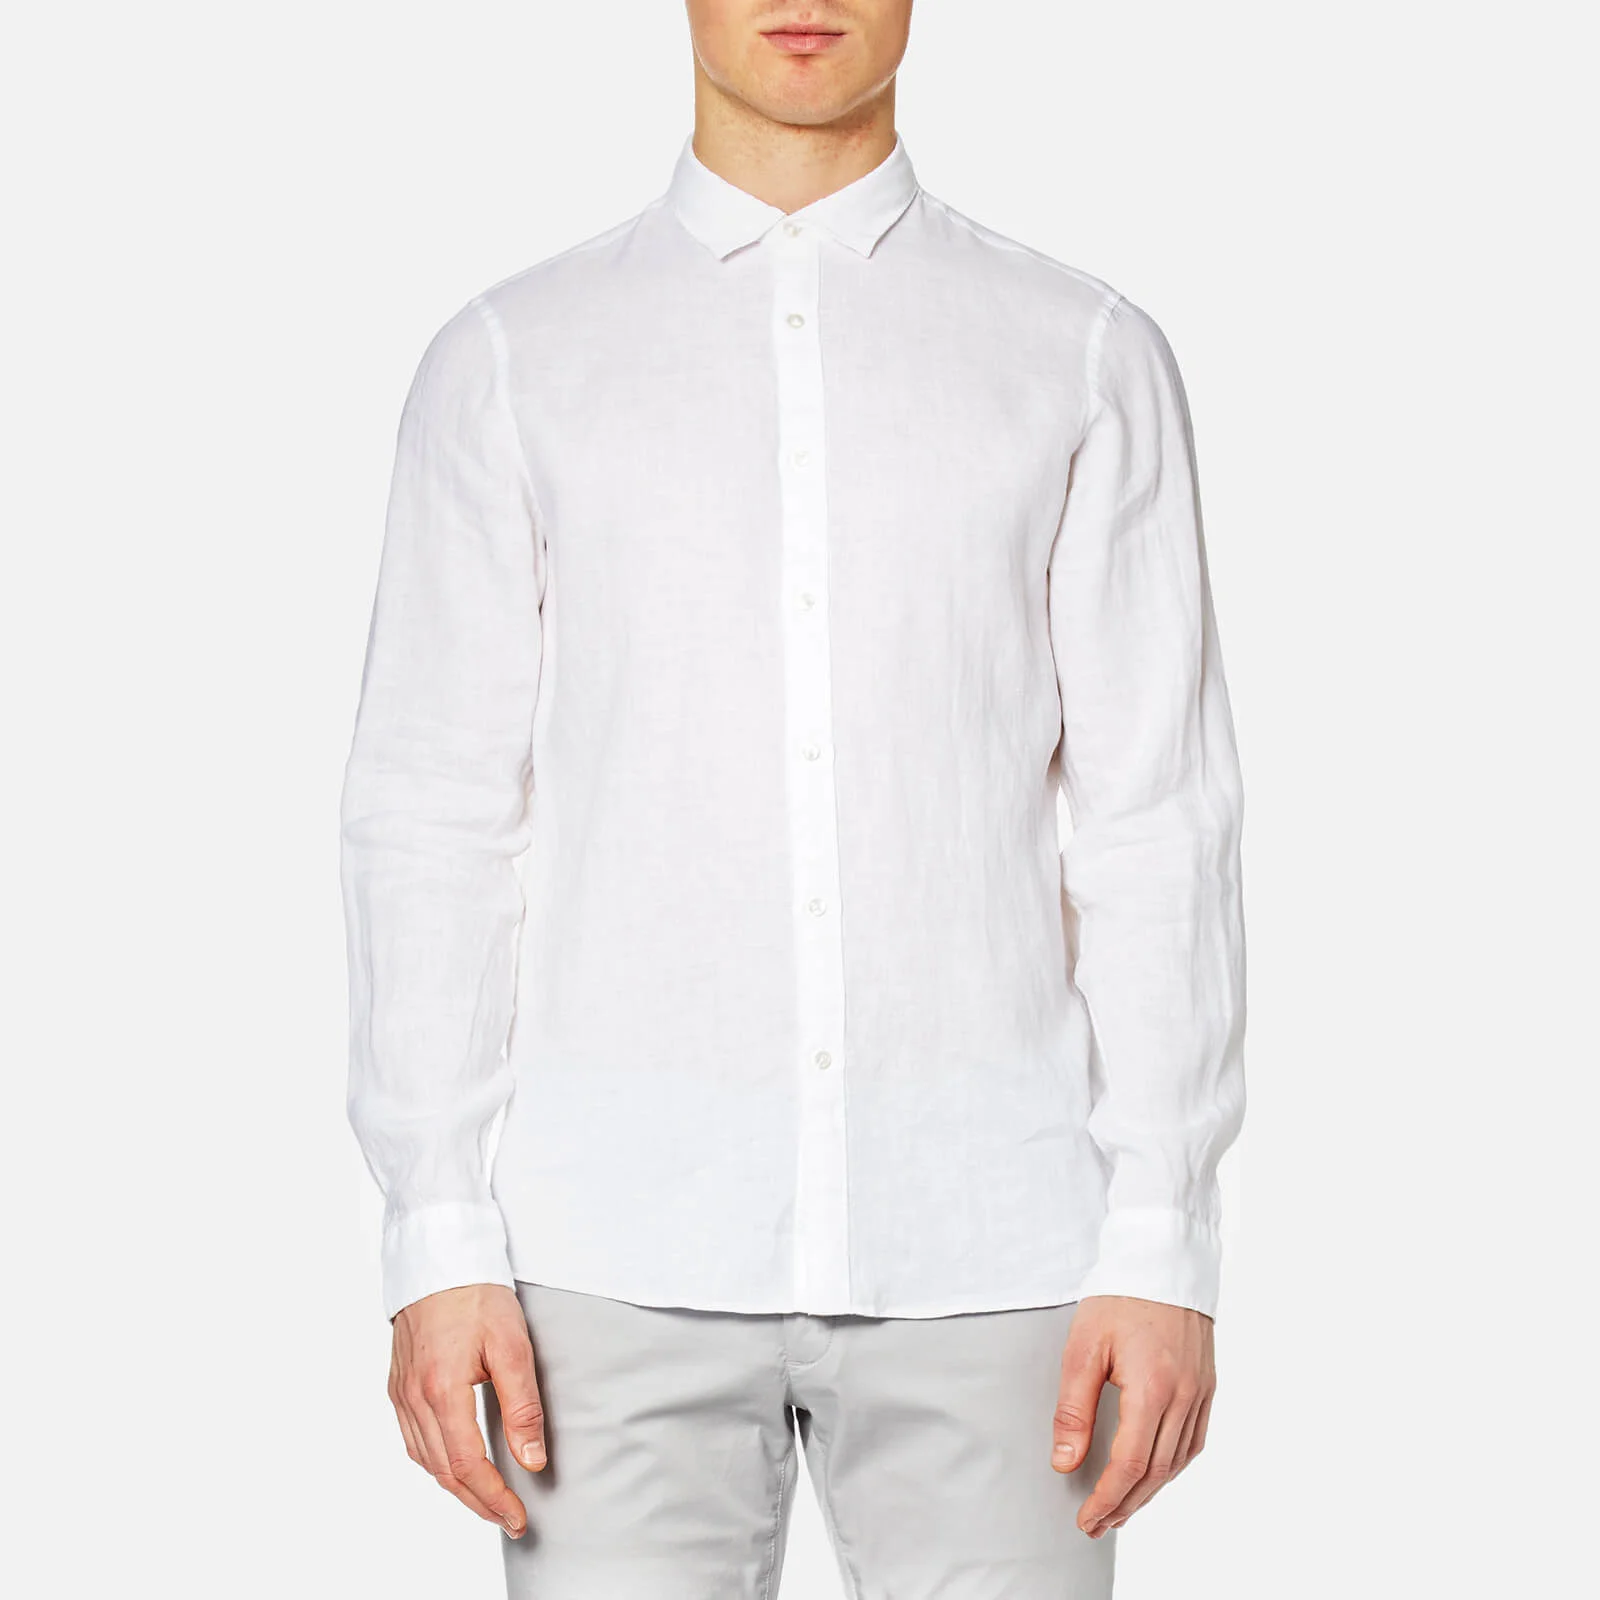 Michael Kors Men's Slim Yarn Dye Linen Solid Long Sleeve Shirt - White Image 1